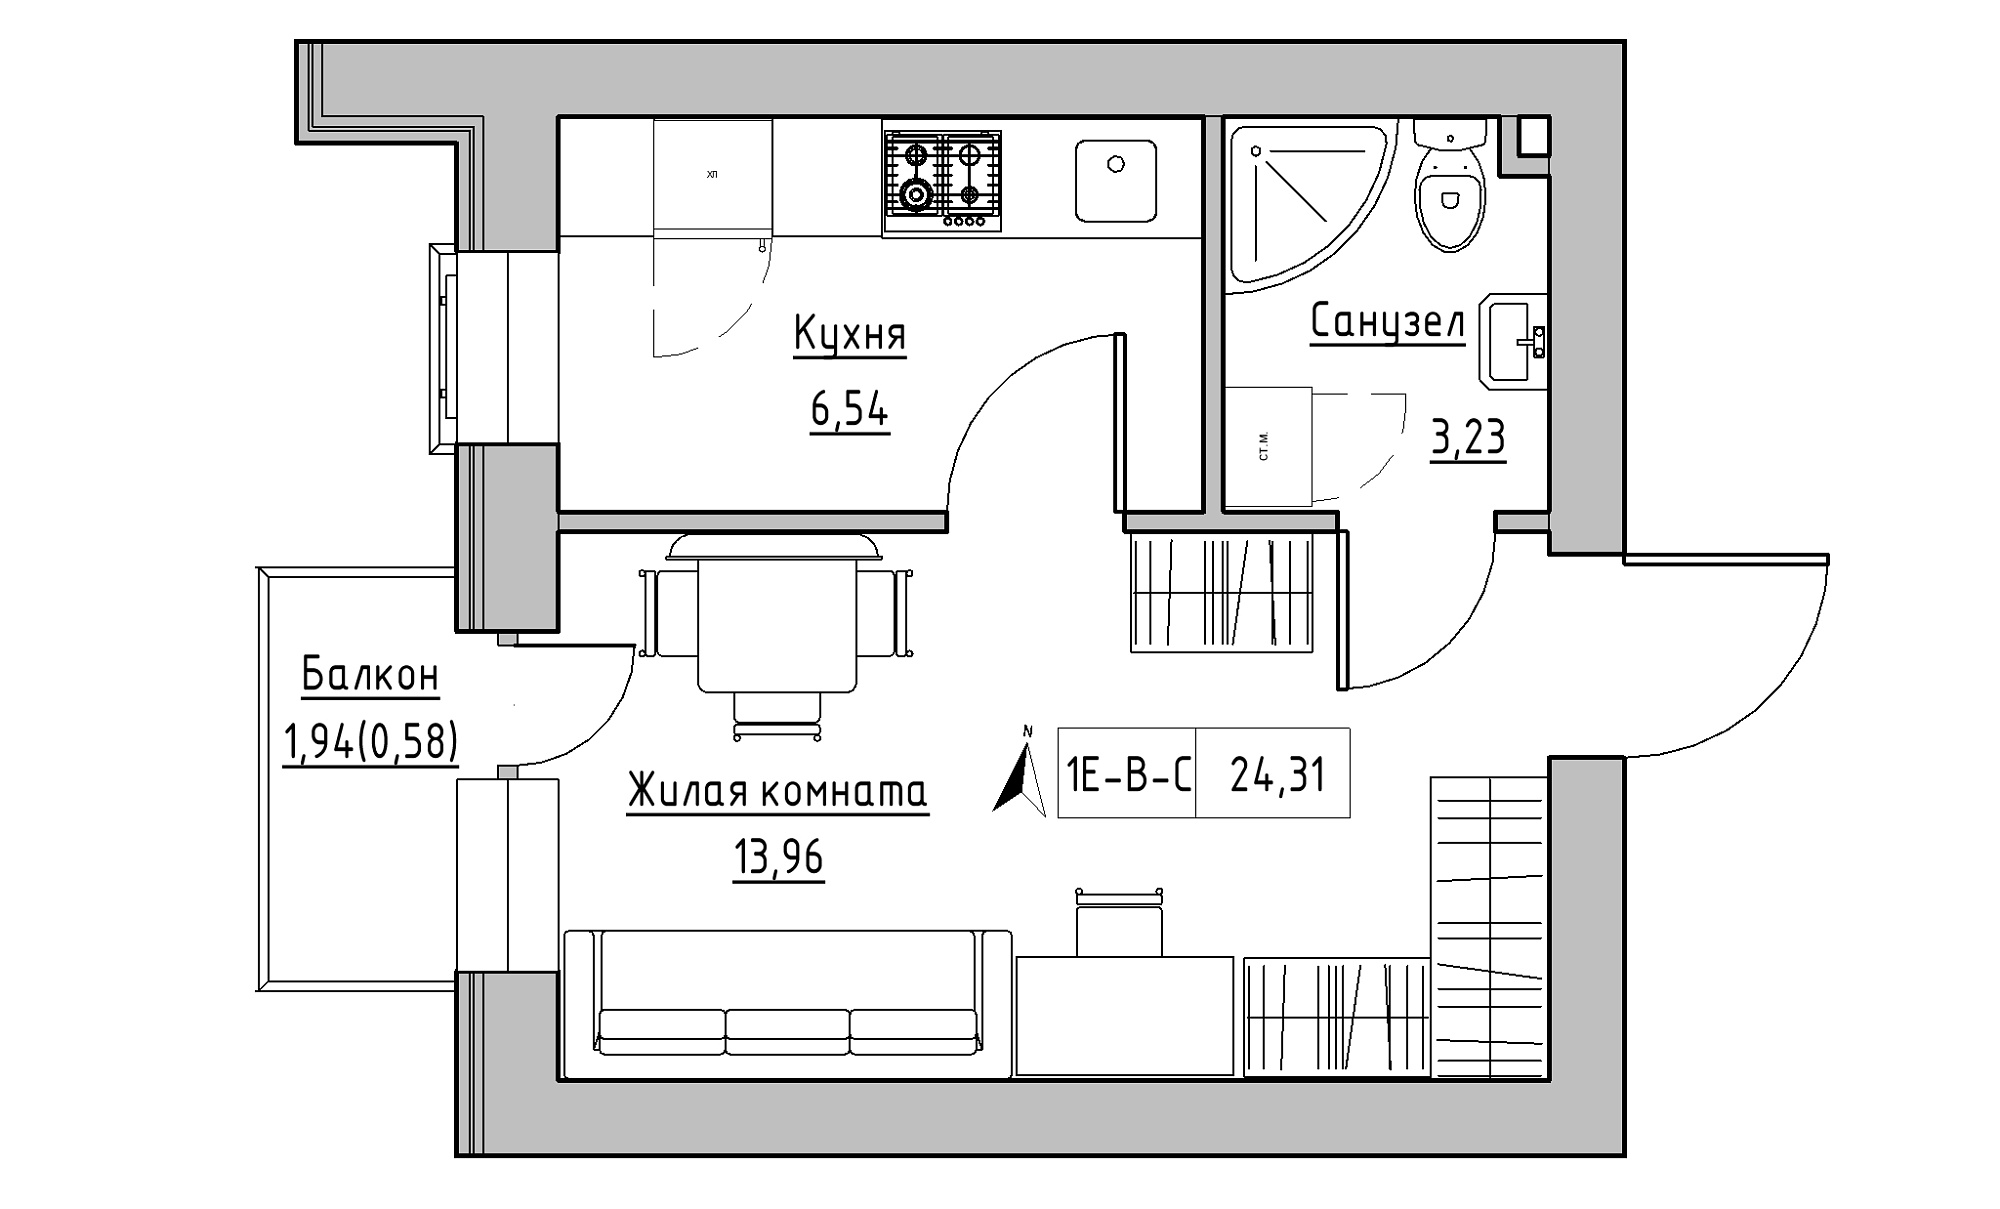 Планування 1-к квартира площею 24.31м2, KS-016-03/0009.